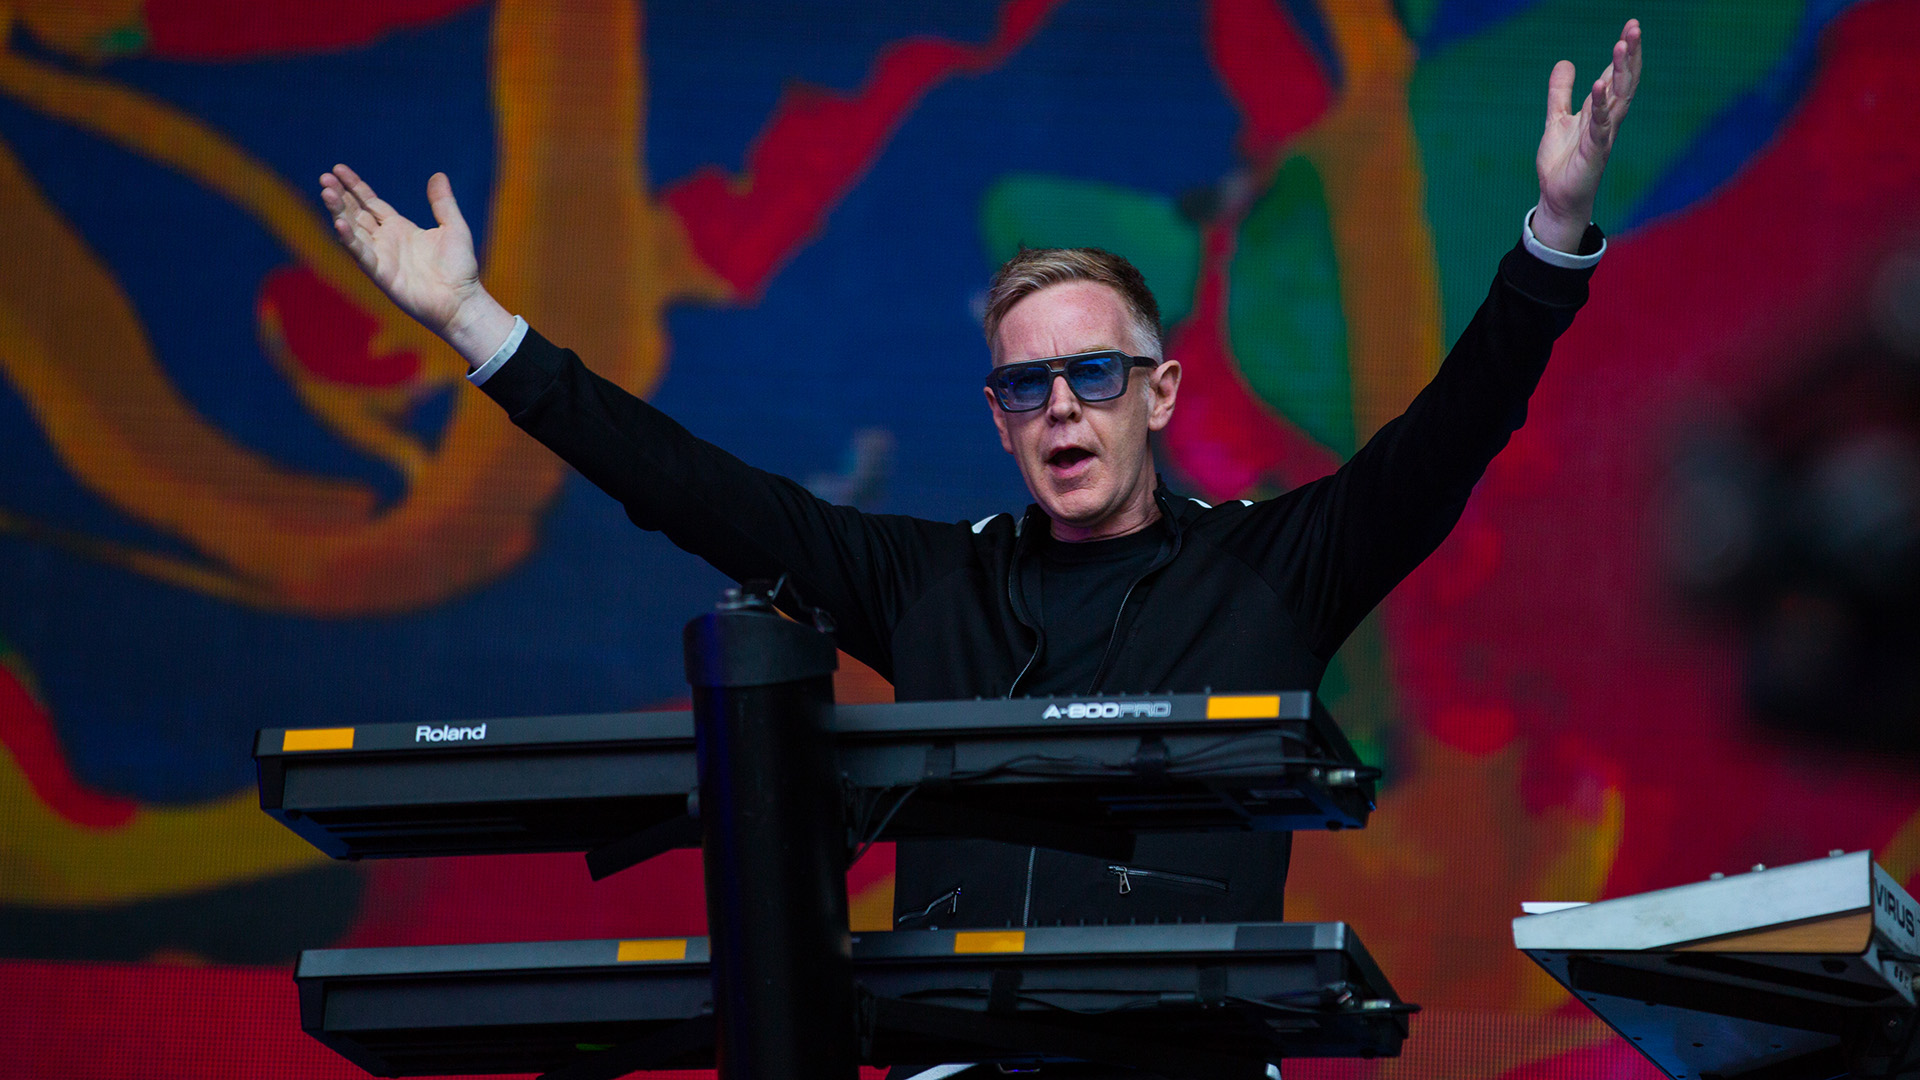 Andrew Flether de Depeche Mode en un concierto en Colonia en 2017 (Ant Palmer/Getty Images)